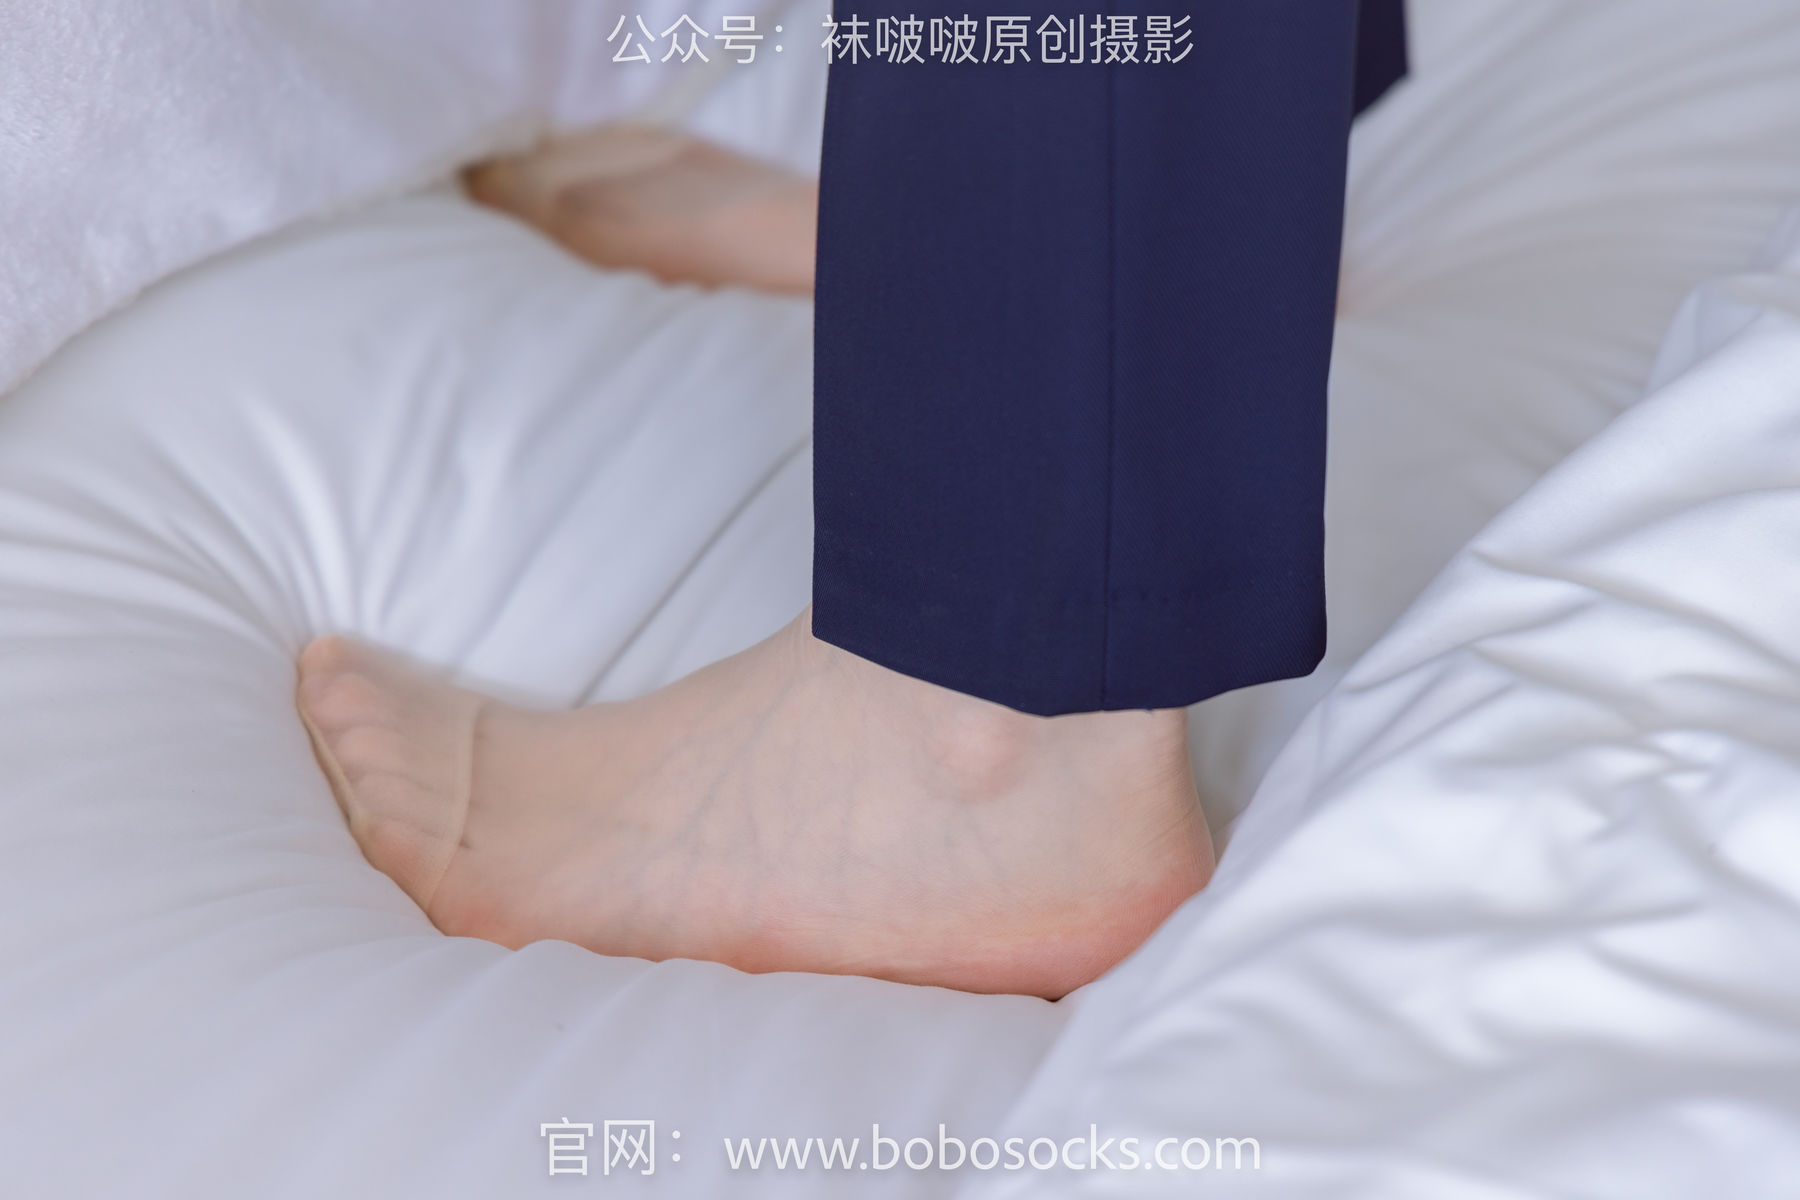 BoBoSocks袜啵啵 No.139 小甜豆-高跟鞋、短肉丝、空姐制服/(140P)